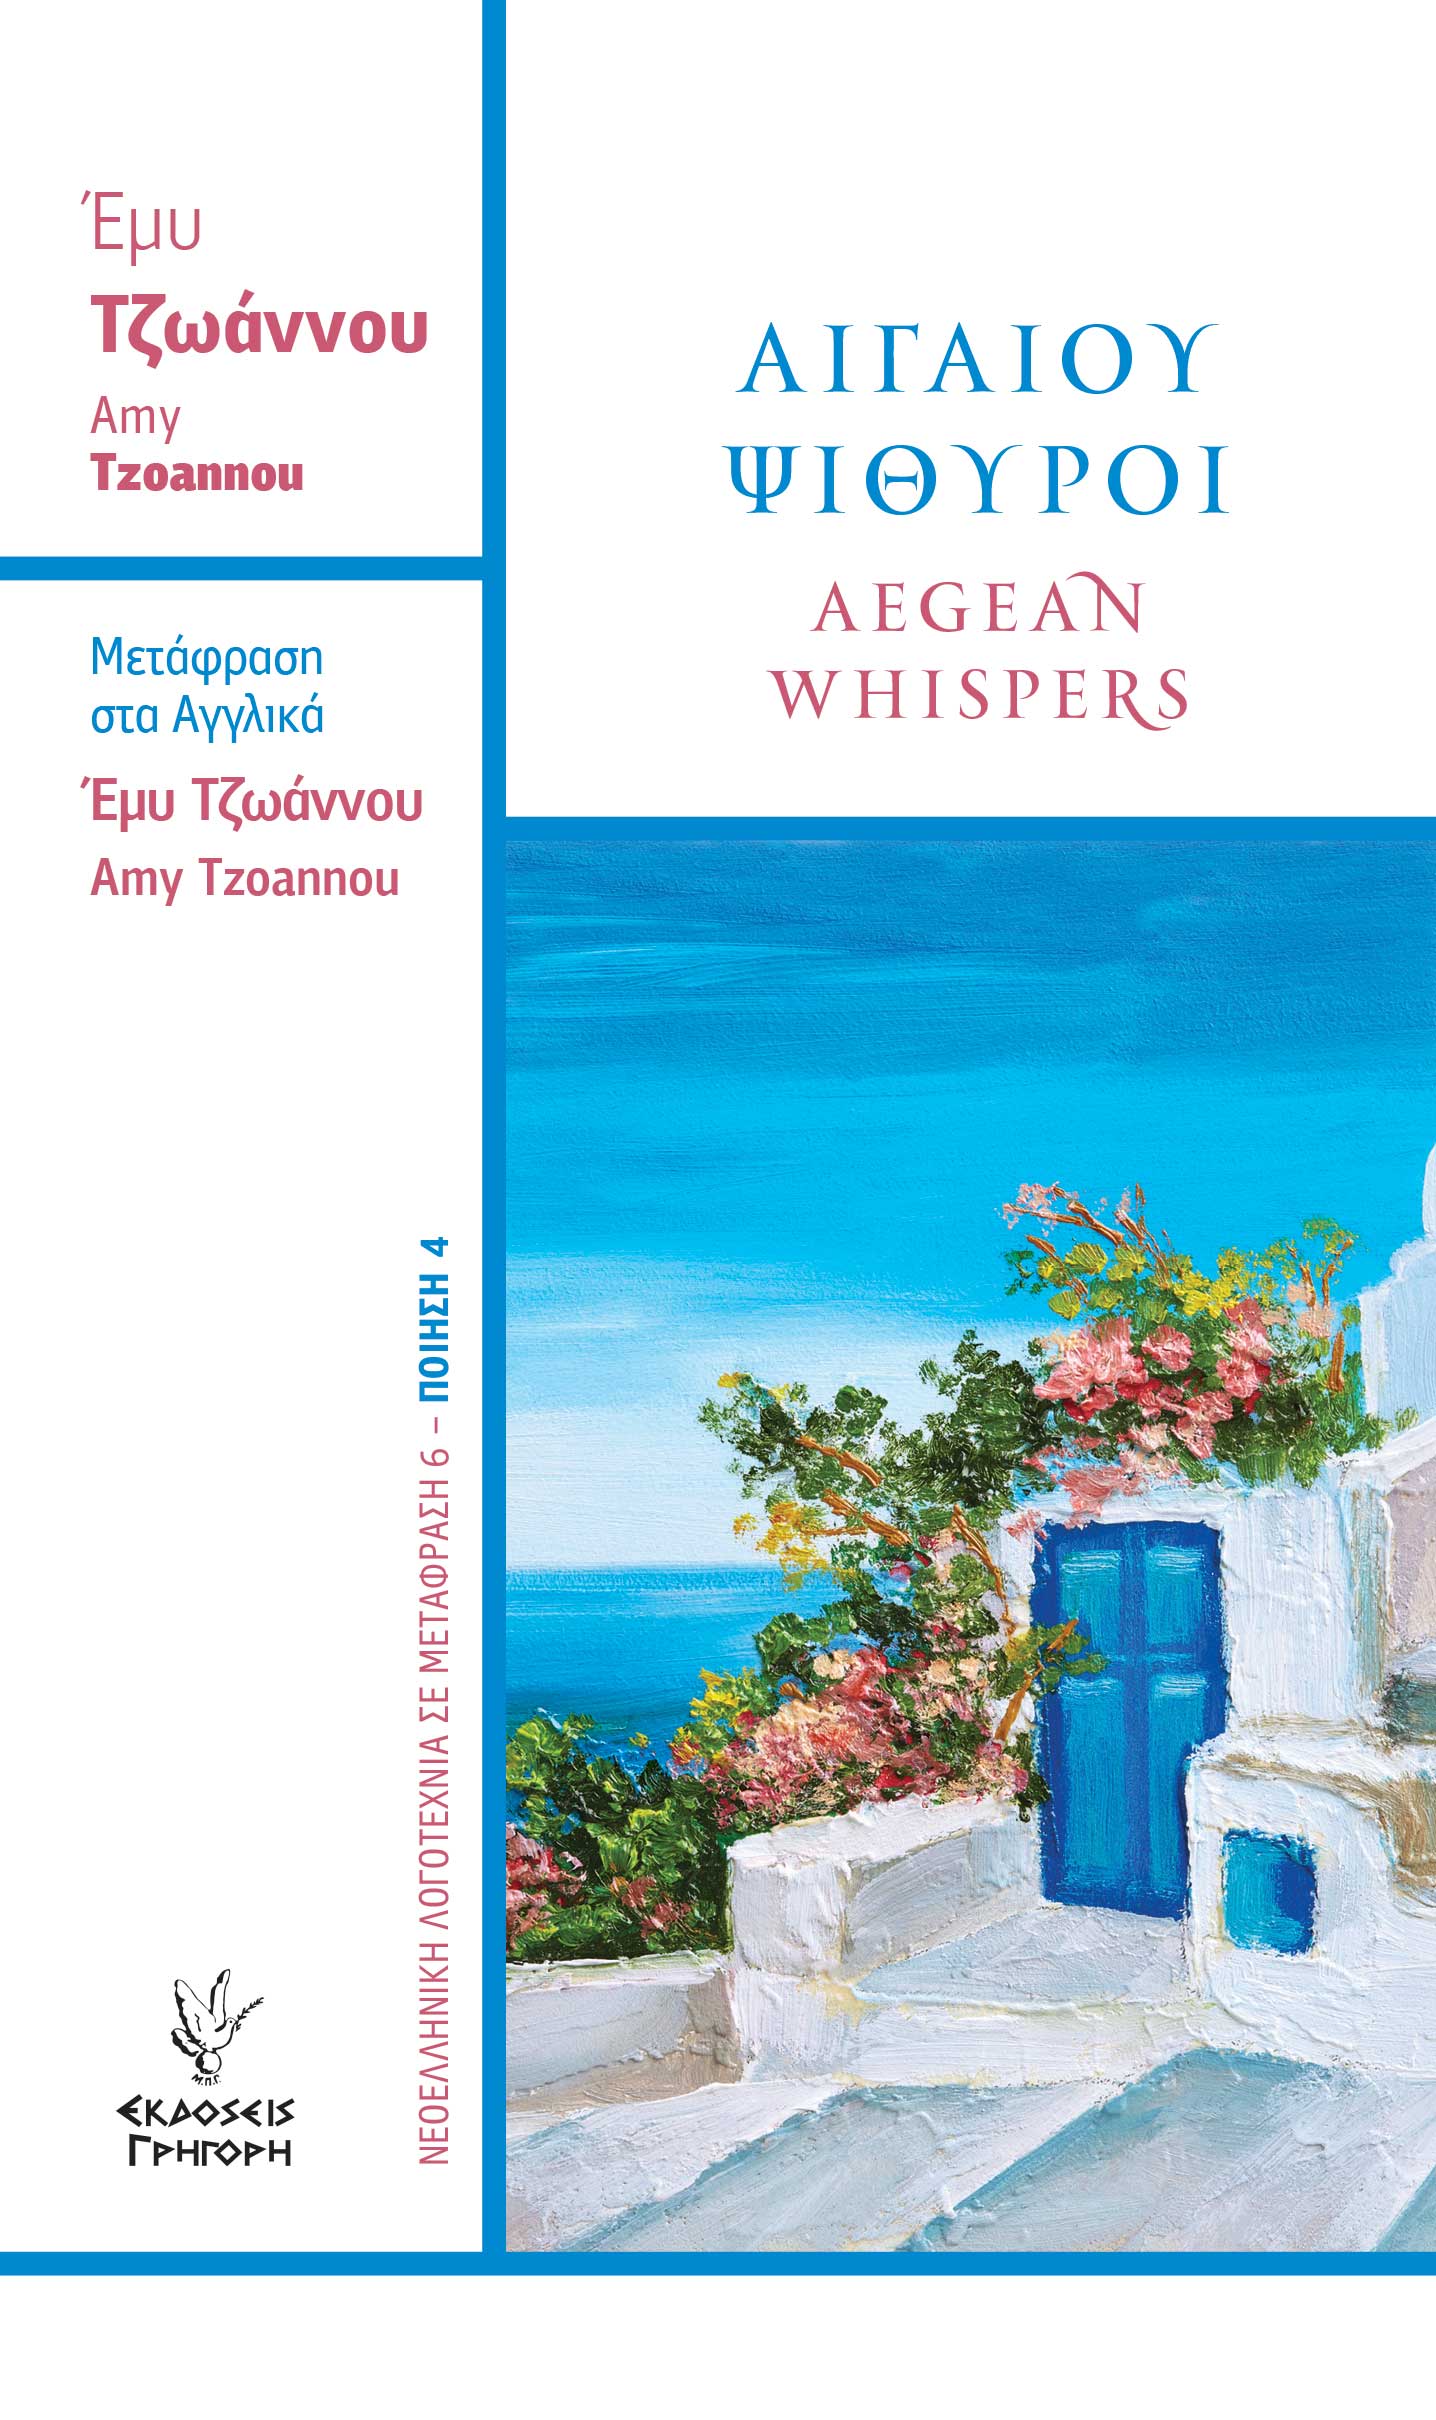 Αιγαίου Ψίθυροι Aegean whispers